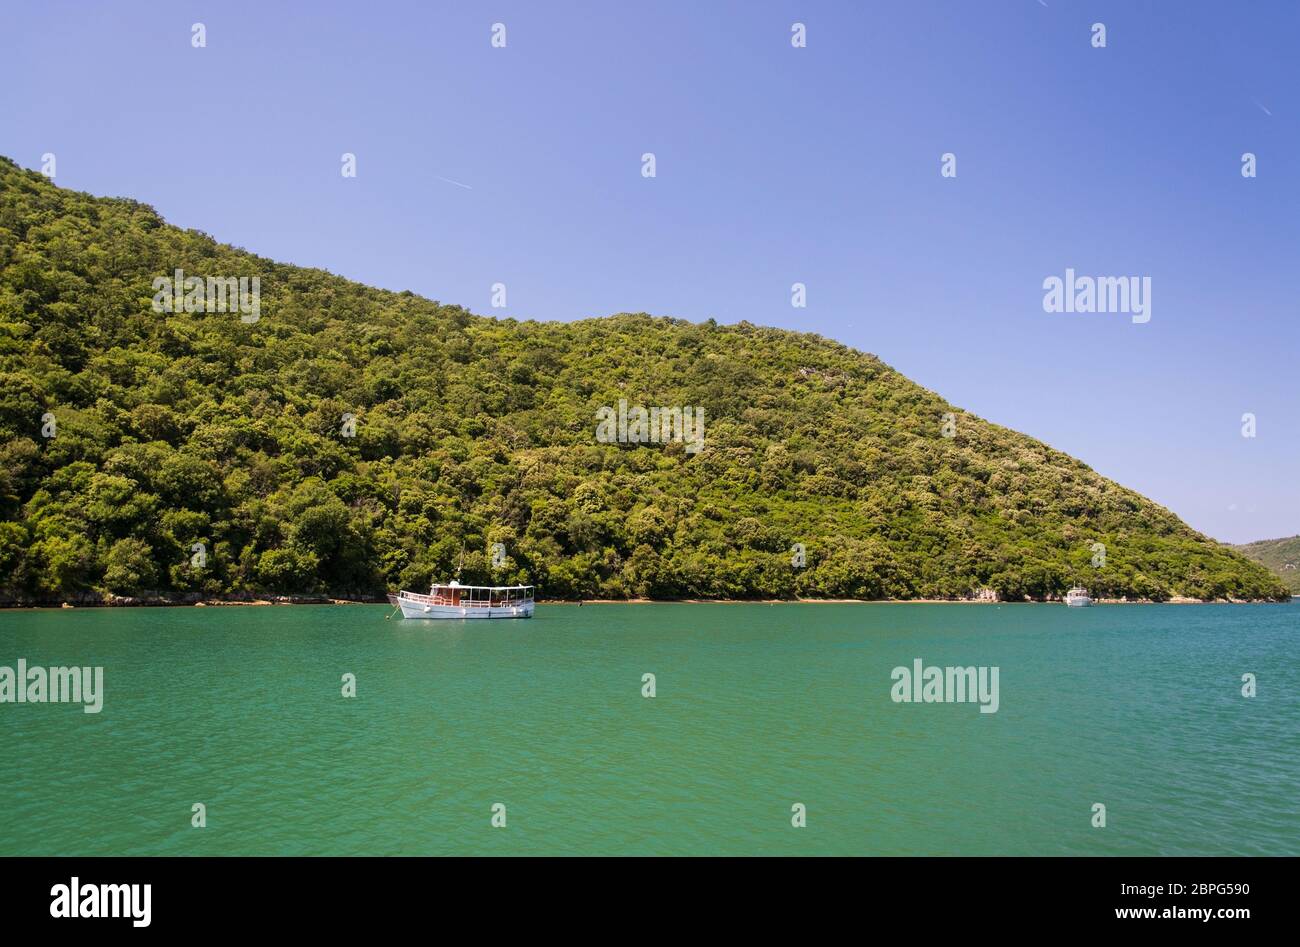 La Baia di Lim e la valle è una peculiare caratteristica geografica sulla costa occidentale dell' Istria, Croazia. Foto Stock